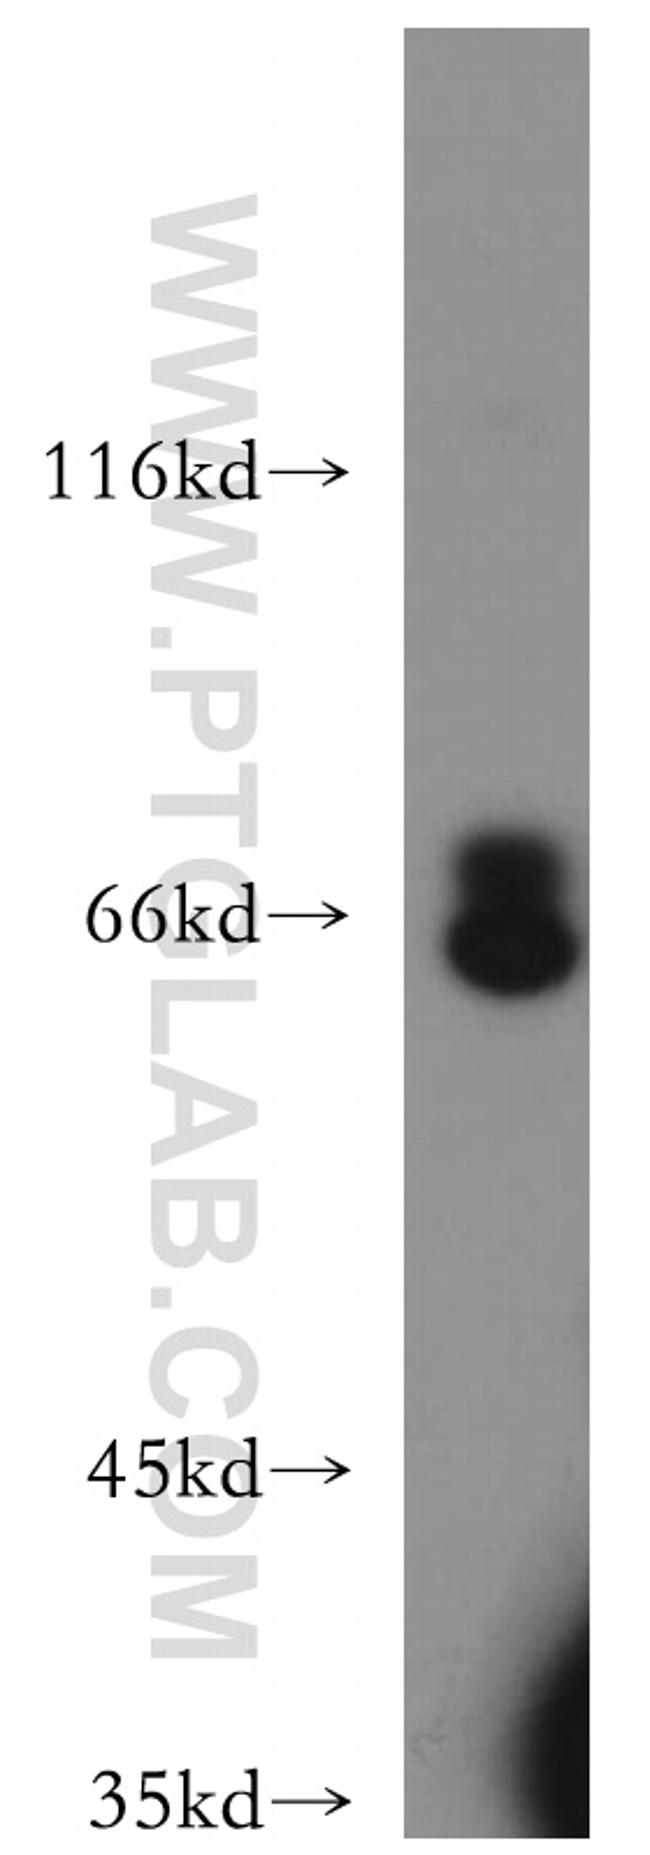 CXCR4 Antibody in Western Blot (WB)